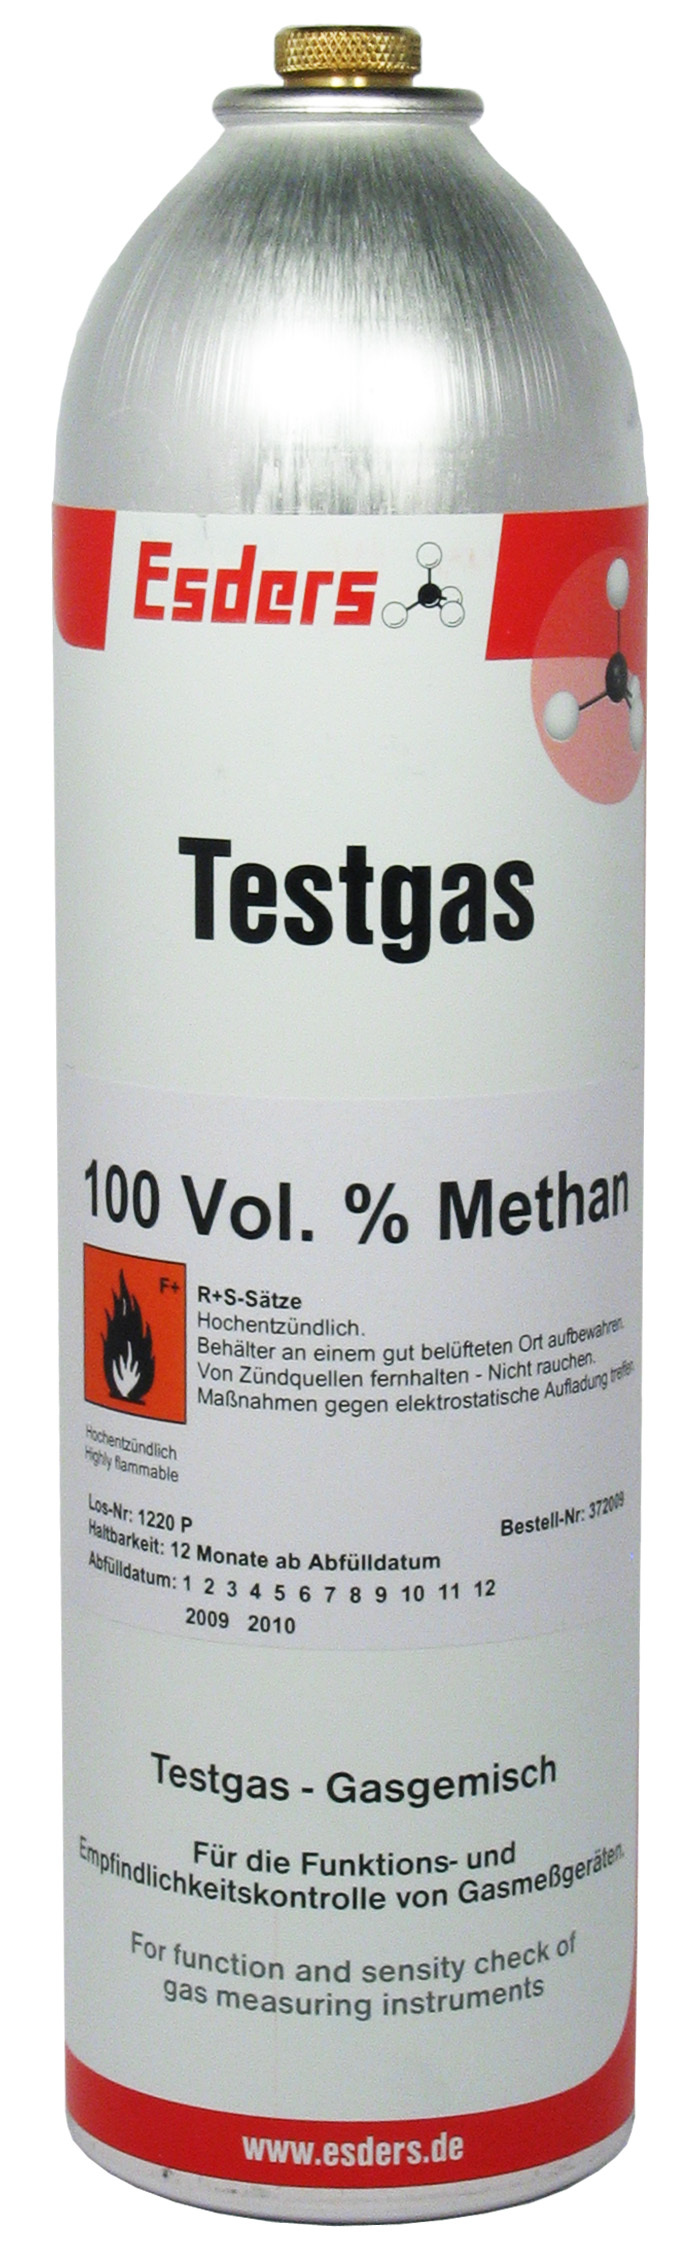 Test gas can 100 Vol.% methane 1 l - 12 bar